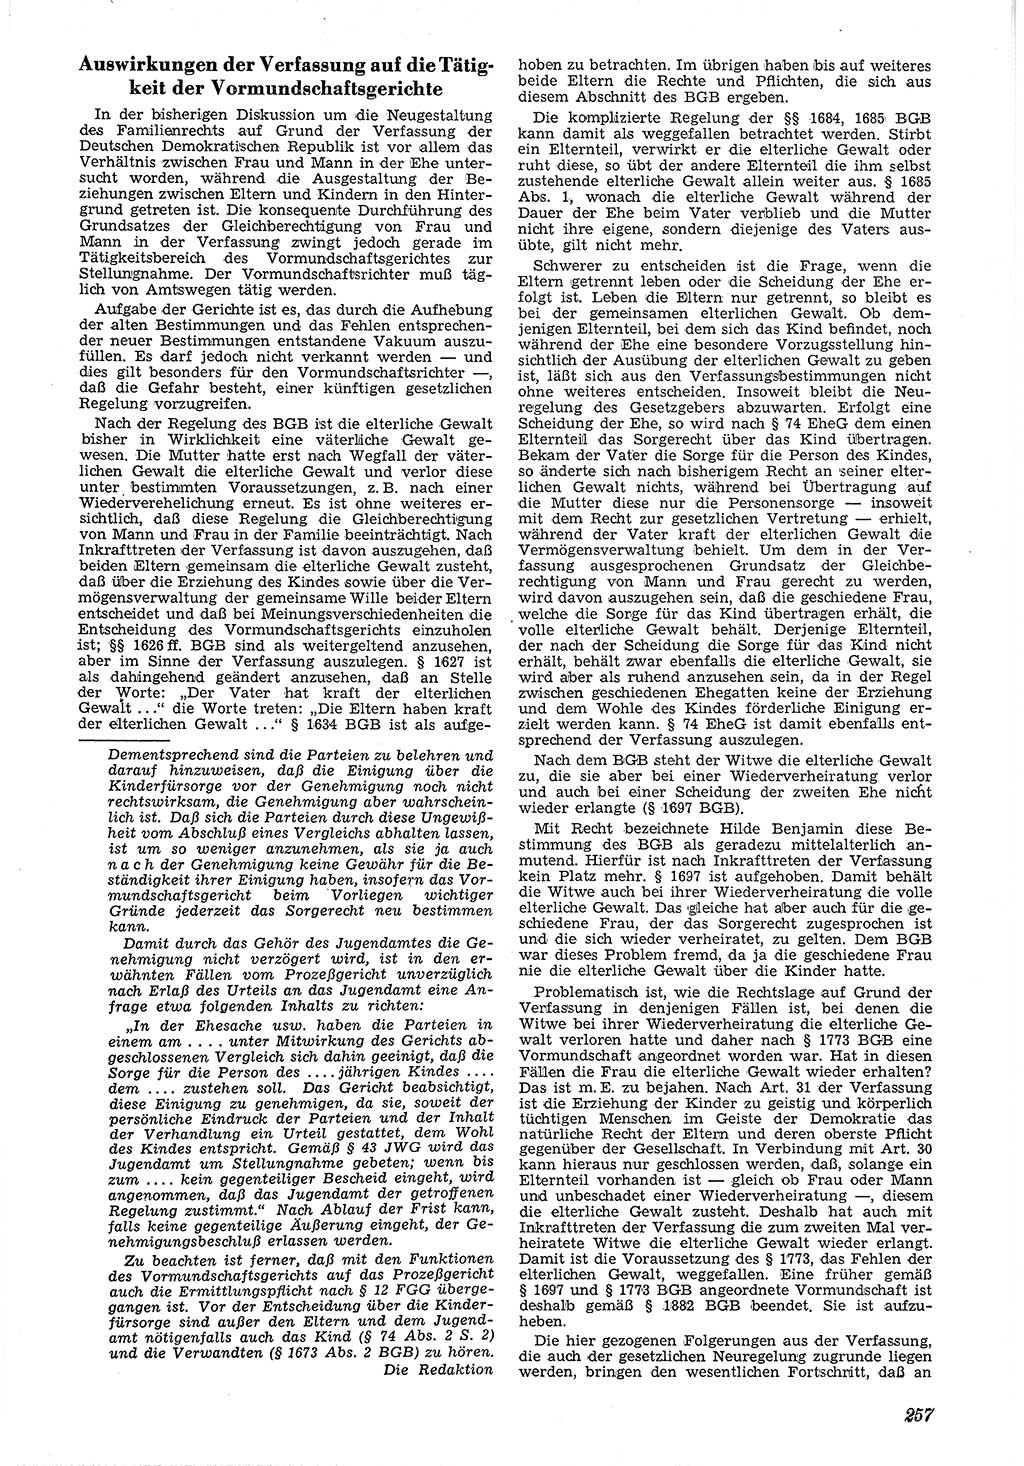 Neue Justiz (NJ), Zeitschrift für Recht und Rechtswissenschaft [Deutsche Demokratische Republik (DDR)], 4. Jahrgang 1950, Seite 257 (NJ DDR 1950, S. 257)